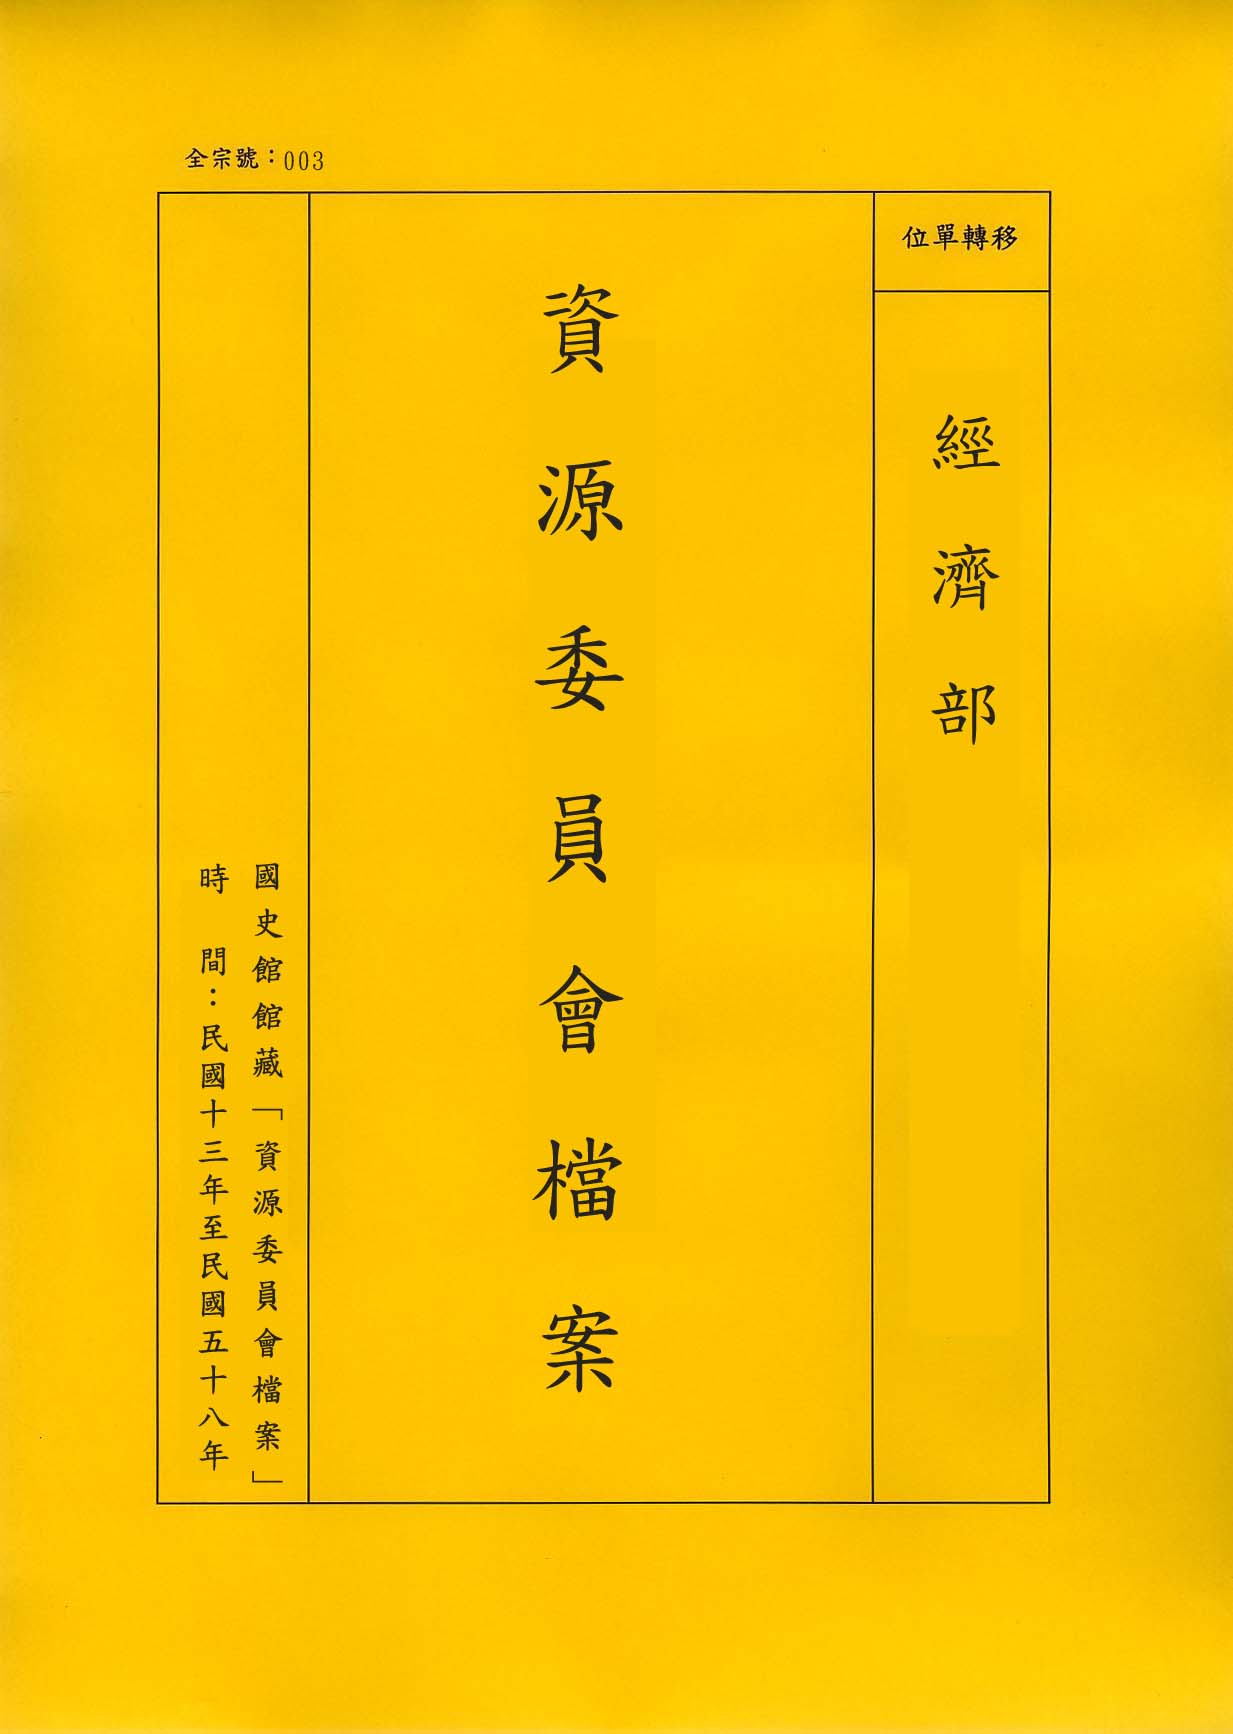 卷名:飲食品類工廠登記卡片─雲南貴州廣西(003-010304-0293)